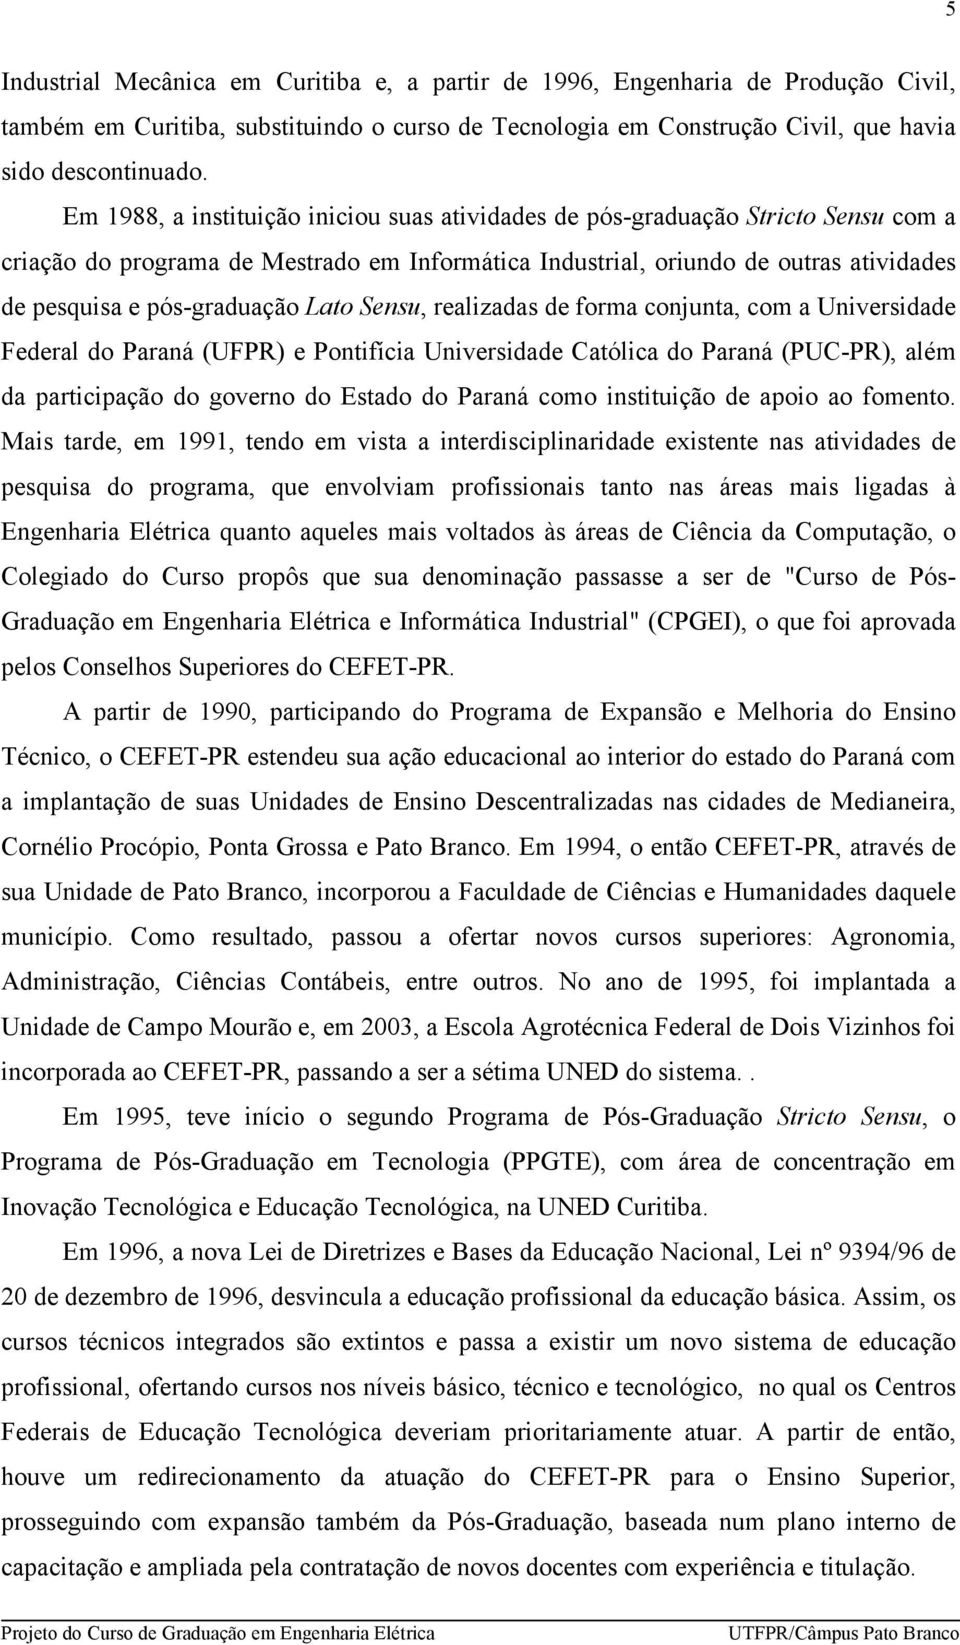 Lato Sensu, realizadas de forma conjunta, com a Universidade Federal do Paraná (UFPR) e Pontifícia Universidade Católica do Paraná (PUC-PR), além da participação do governo do Estado do Paraná como